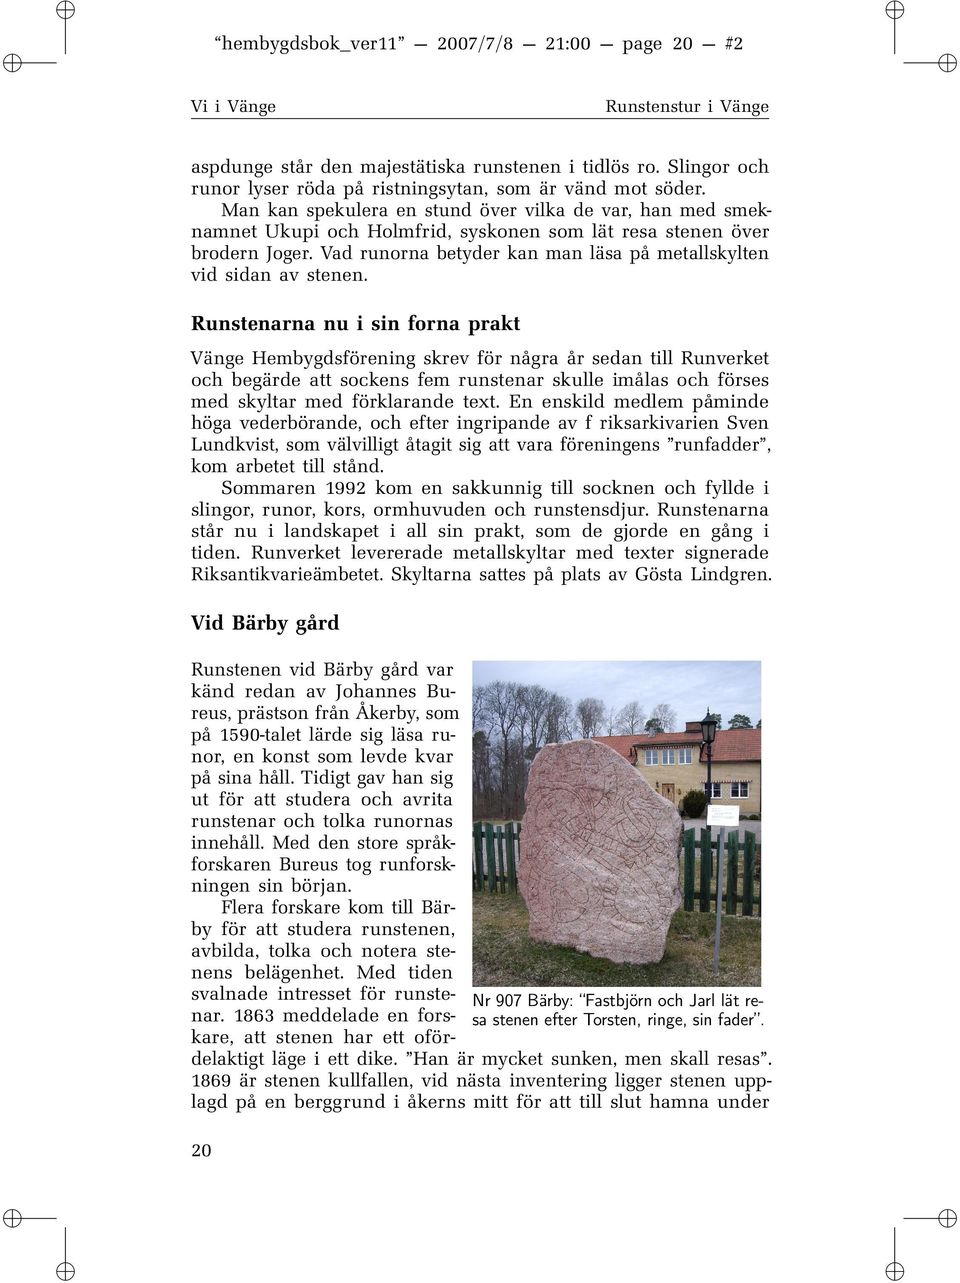 Runstenarna nu sn forna prakt Vänge Hembygdsförenng skrev för några år sedan tll Runverket och begärde att sockens fem runstenar skulle målas och förses med skyltar med förklarande text.